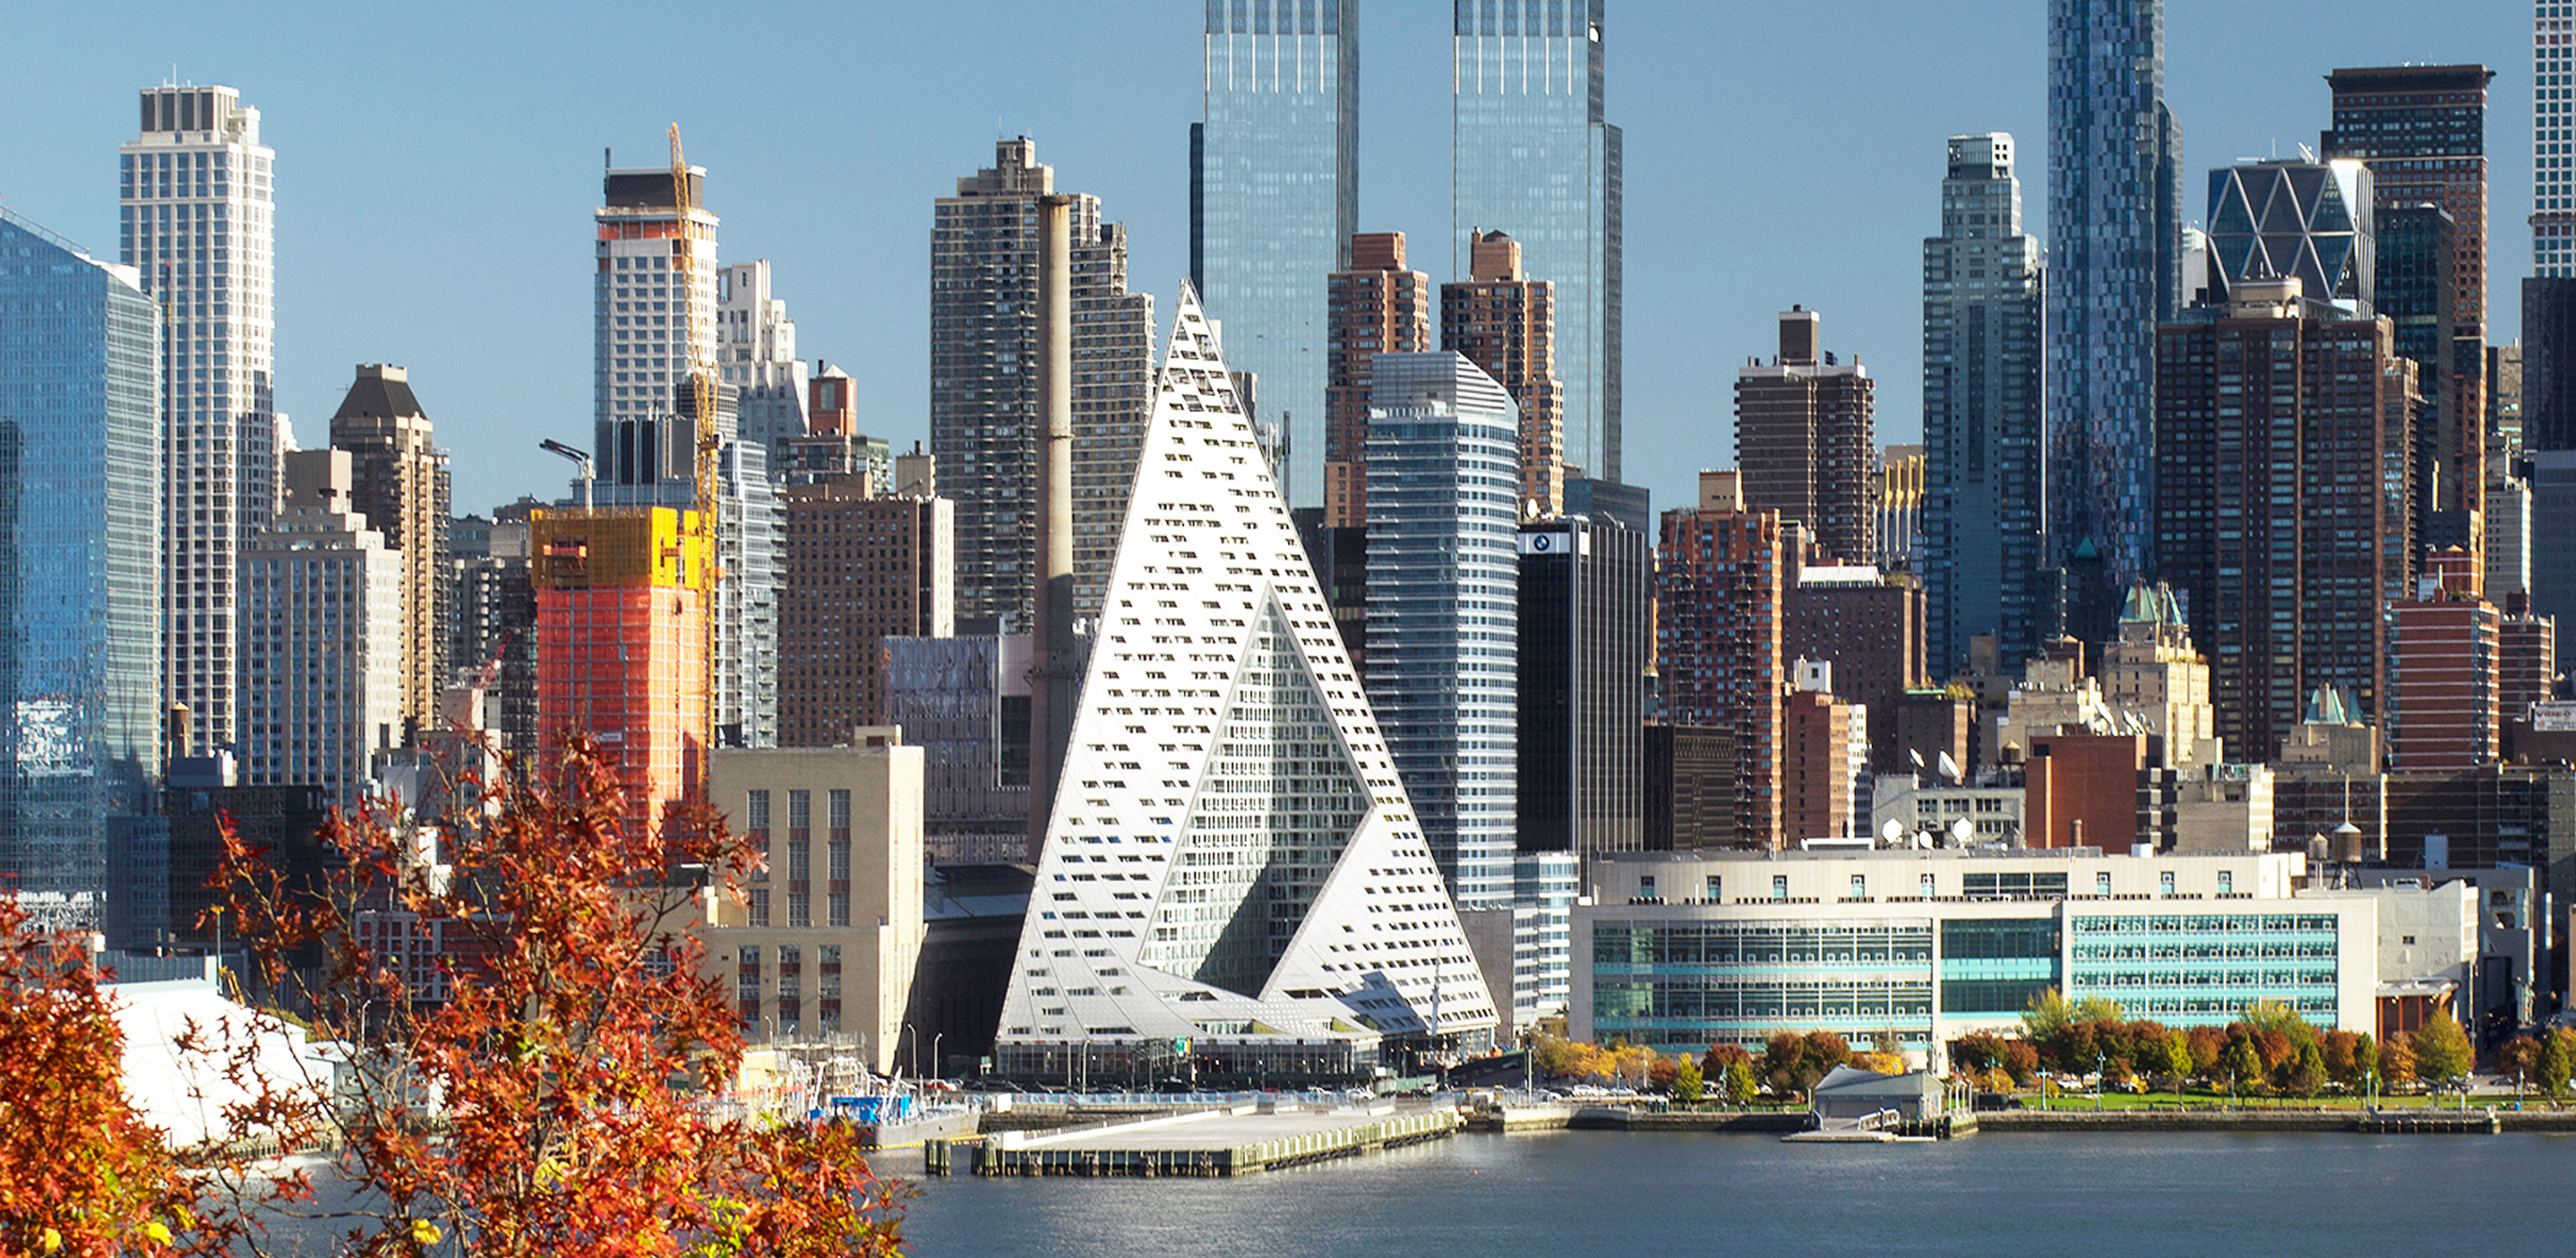 El edificio VIA 57 West de Nueva York tiene 142,30 metros de altura y tiene sus líneas piramidales con vistas al Río Hudson. Foto:Nic Lehoux. Foto cedida por The Council on Tall Buildings and Urban Habitat (CTBUH).